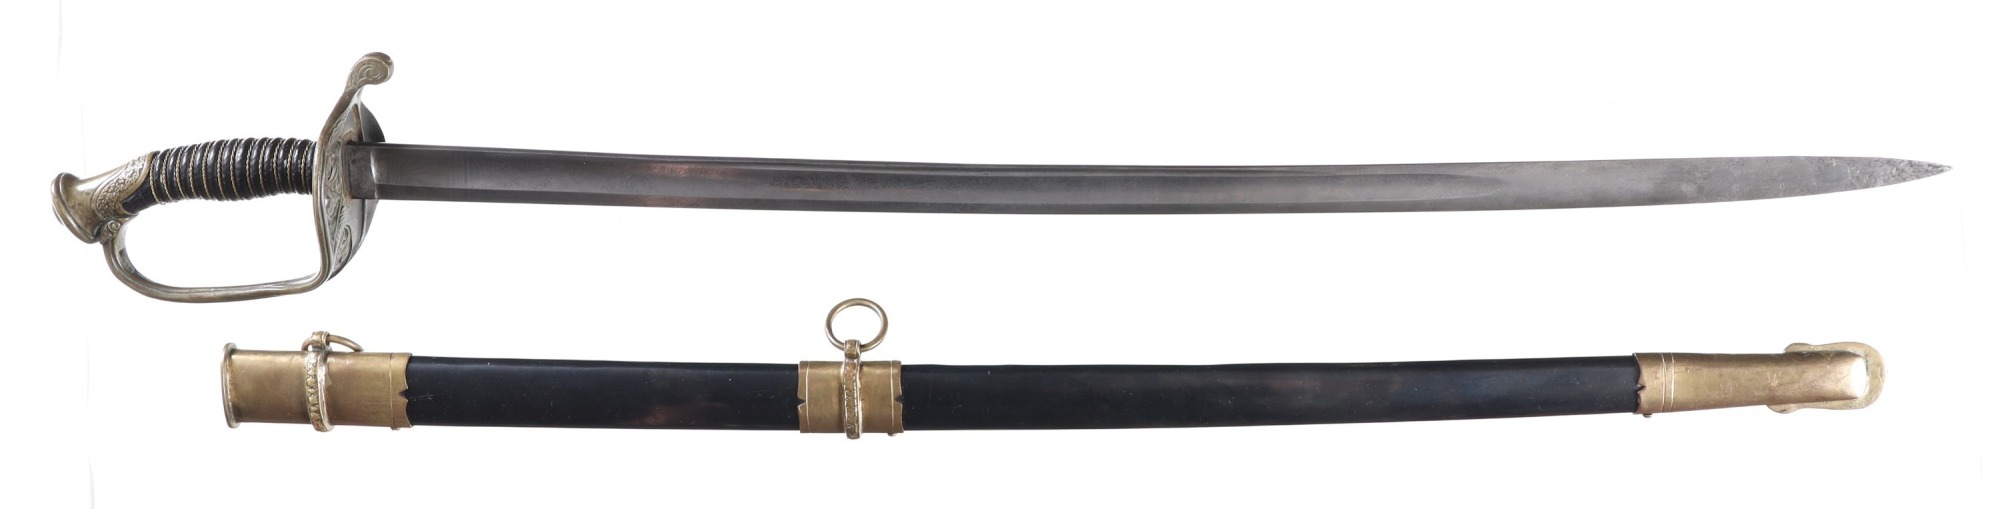 Civil War Model 1850 Sword